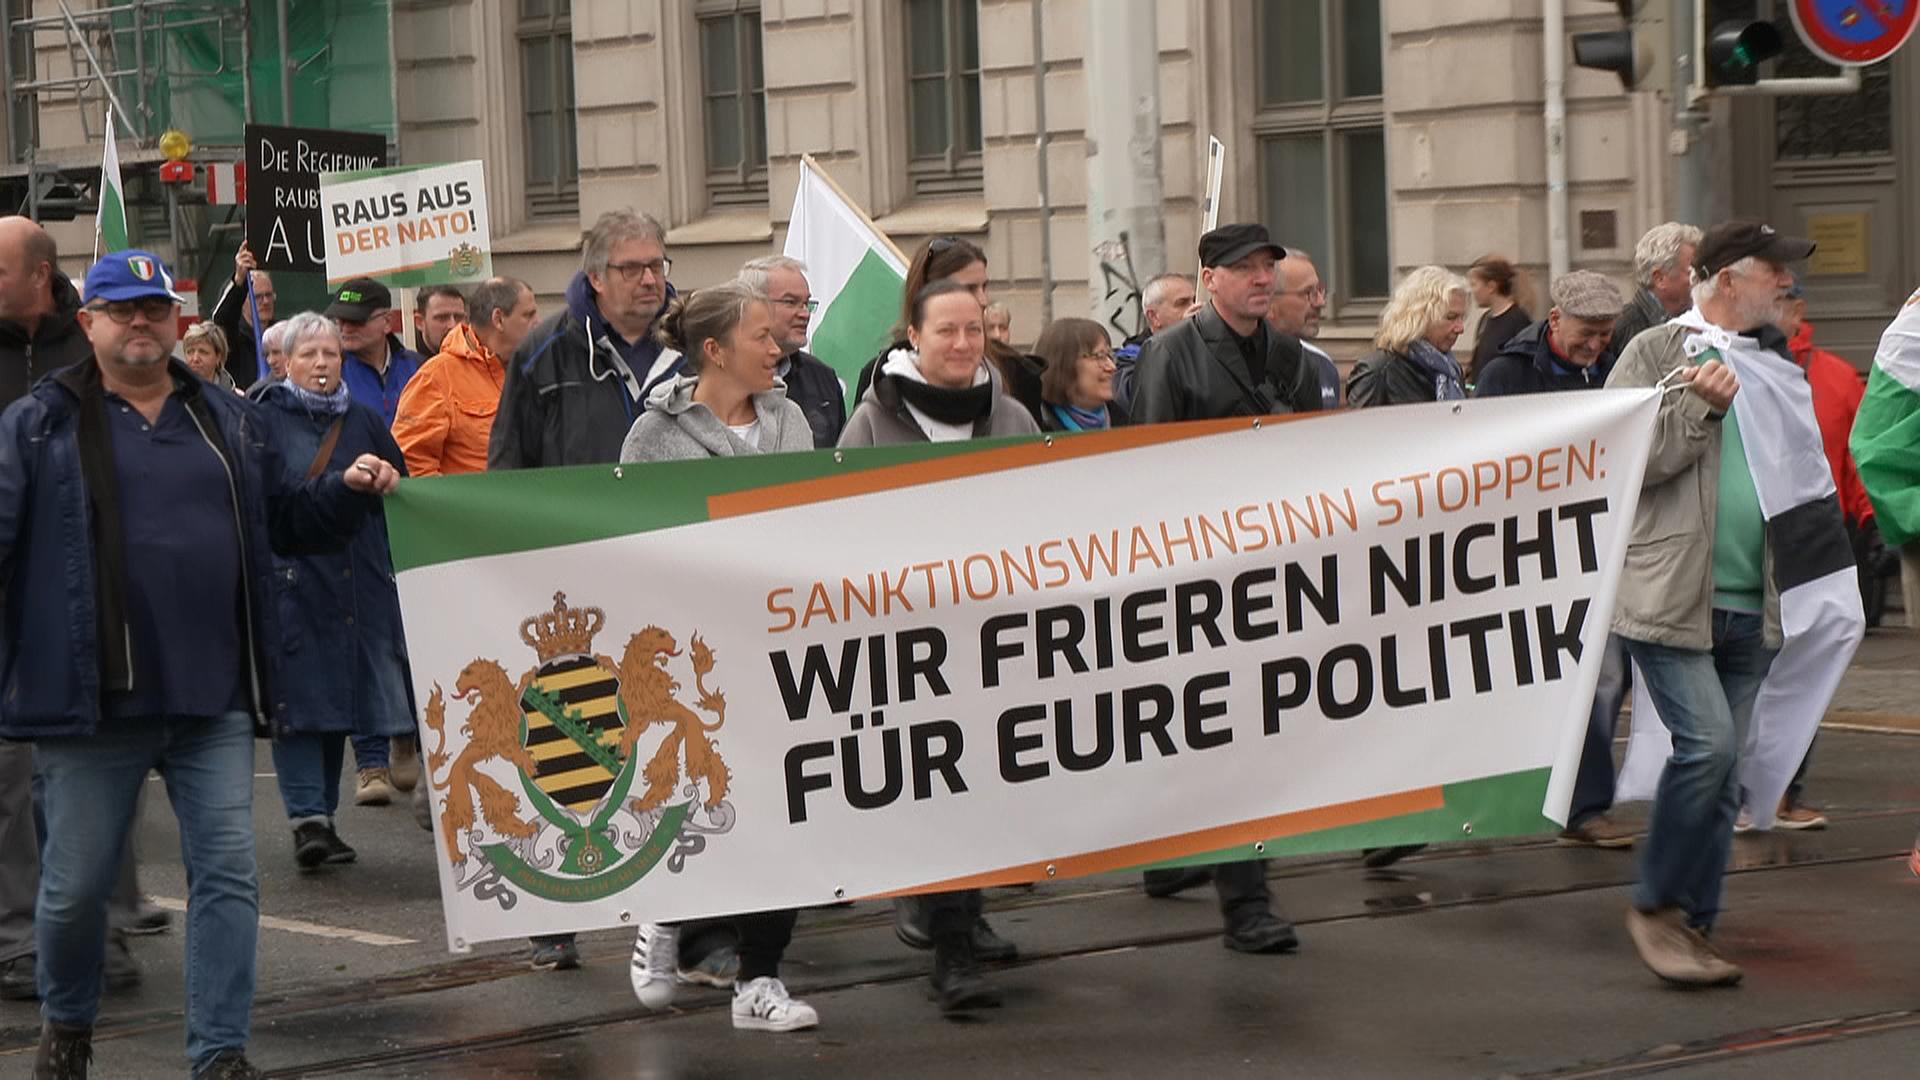 Demonstranten laufen mit Banner der rechtsextremen "Freien Sachsen": "Wir frieren nicht für eure Politik"